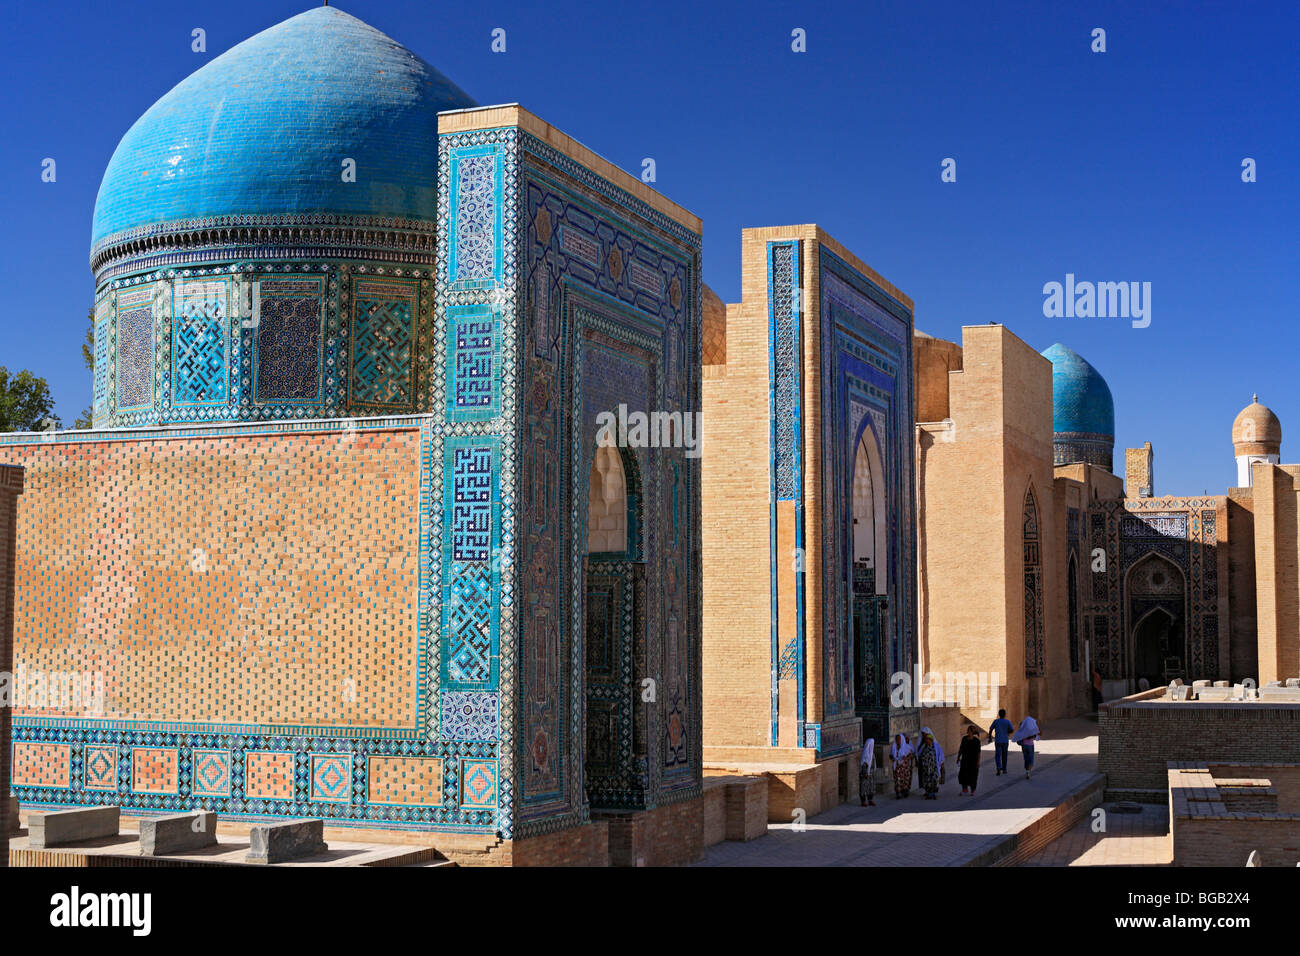 Shah-i-Zinda mausoleums, Samarkand, Uzbekistan Stock Photo